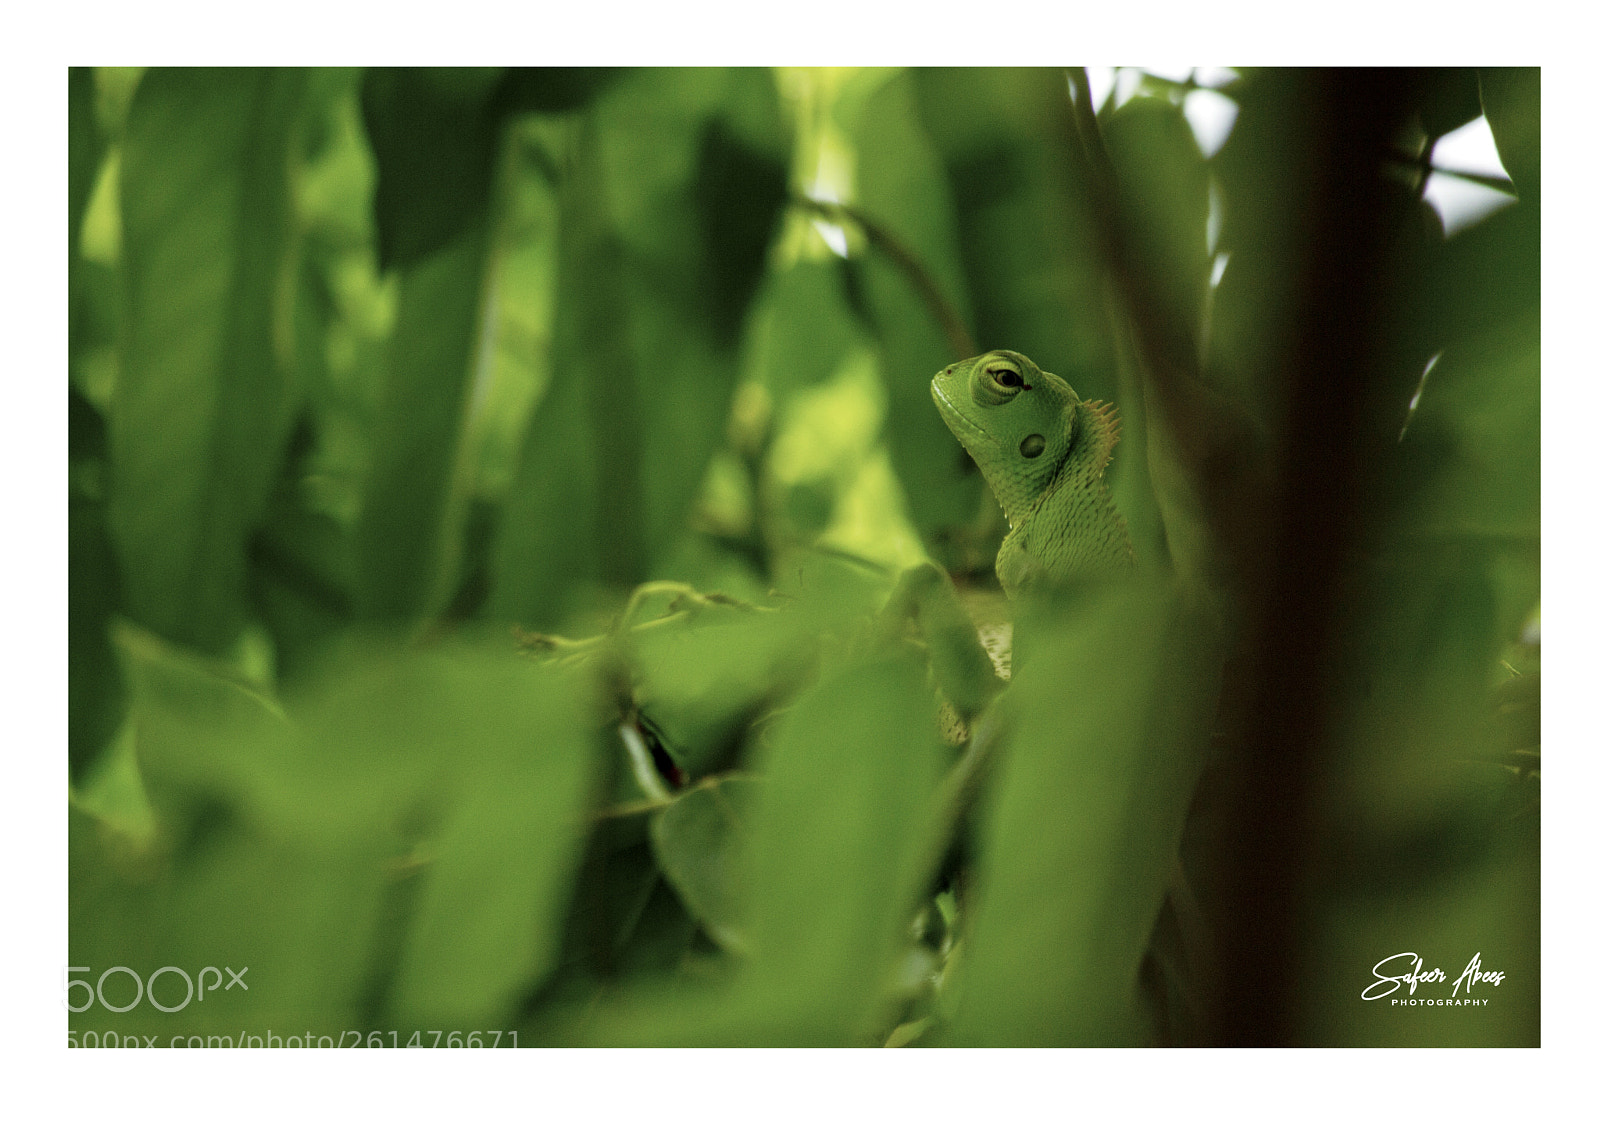 Canon EOS 550D (EOS Rebel T2i / EOS Kiss X4) sample photo. Green garden lizard photography